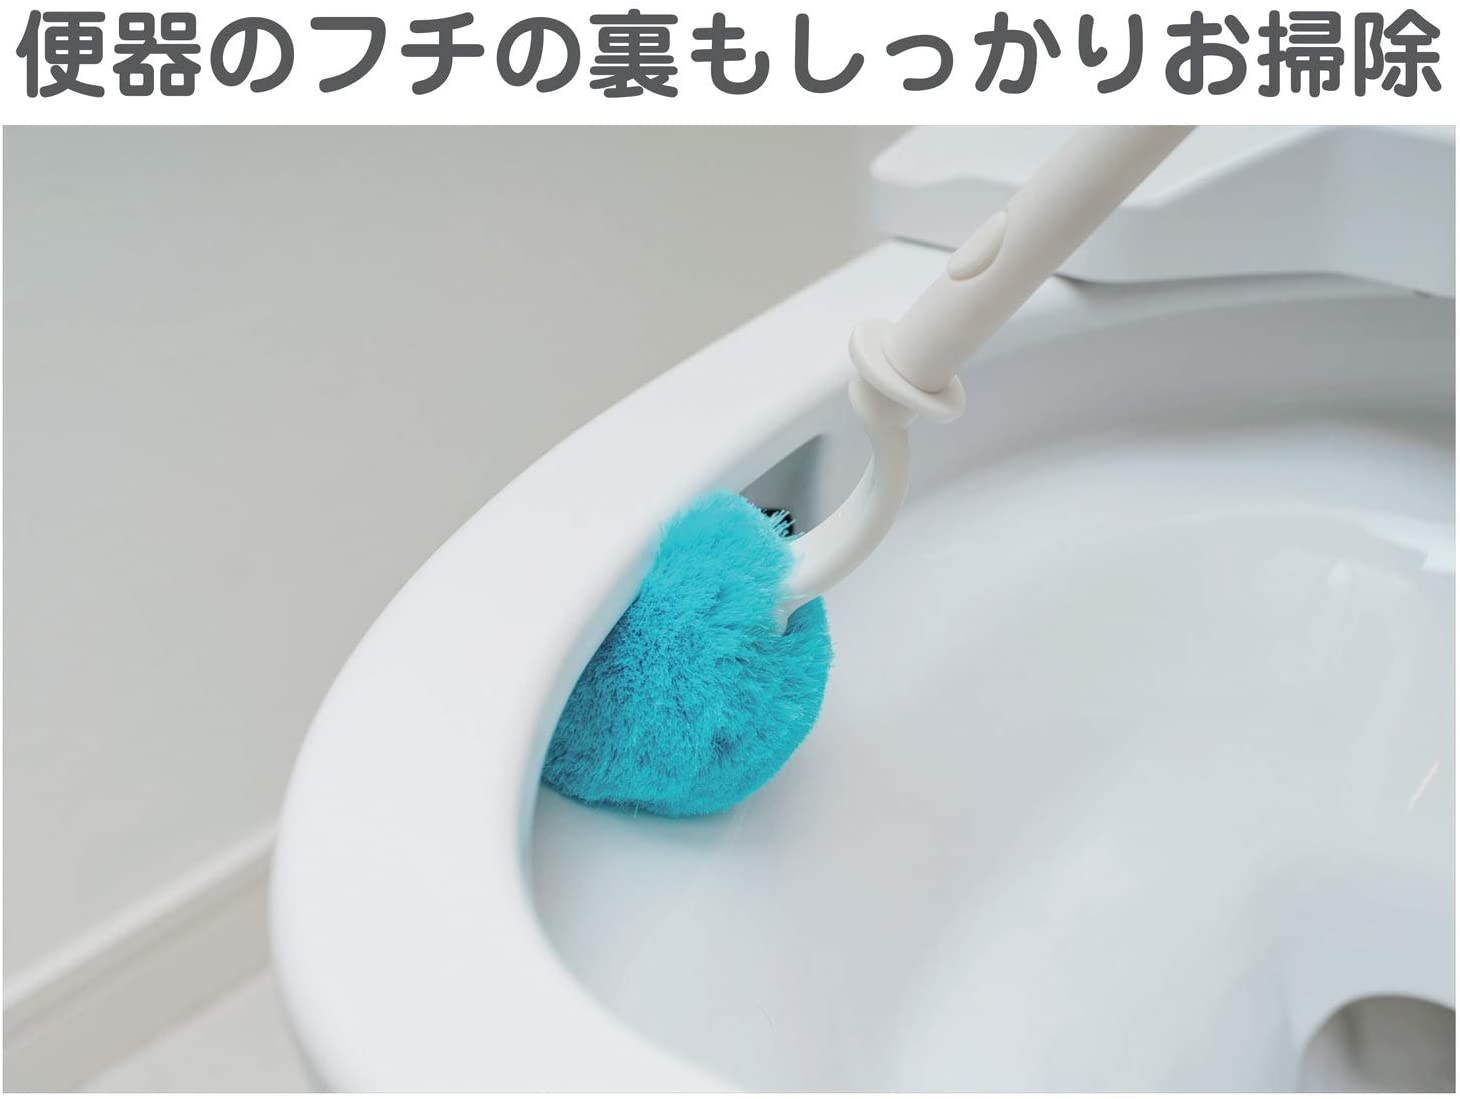 山崎産業(Yamazaki) トイレバスボンくん ふさふさクリーナー ケース付の商品画像サムネ4 